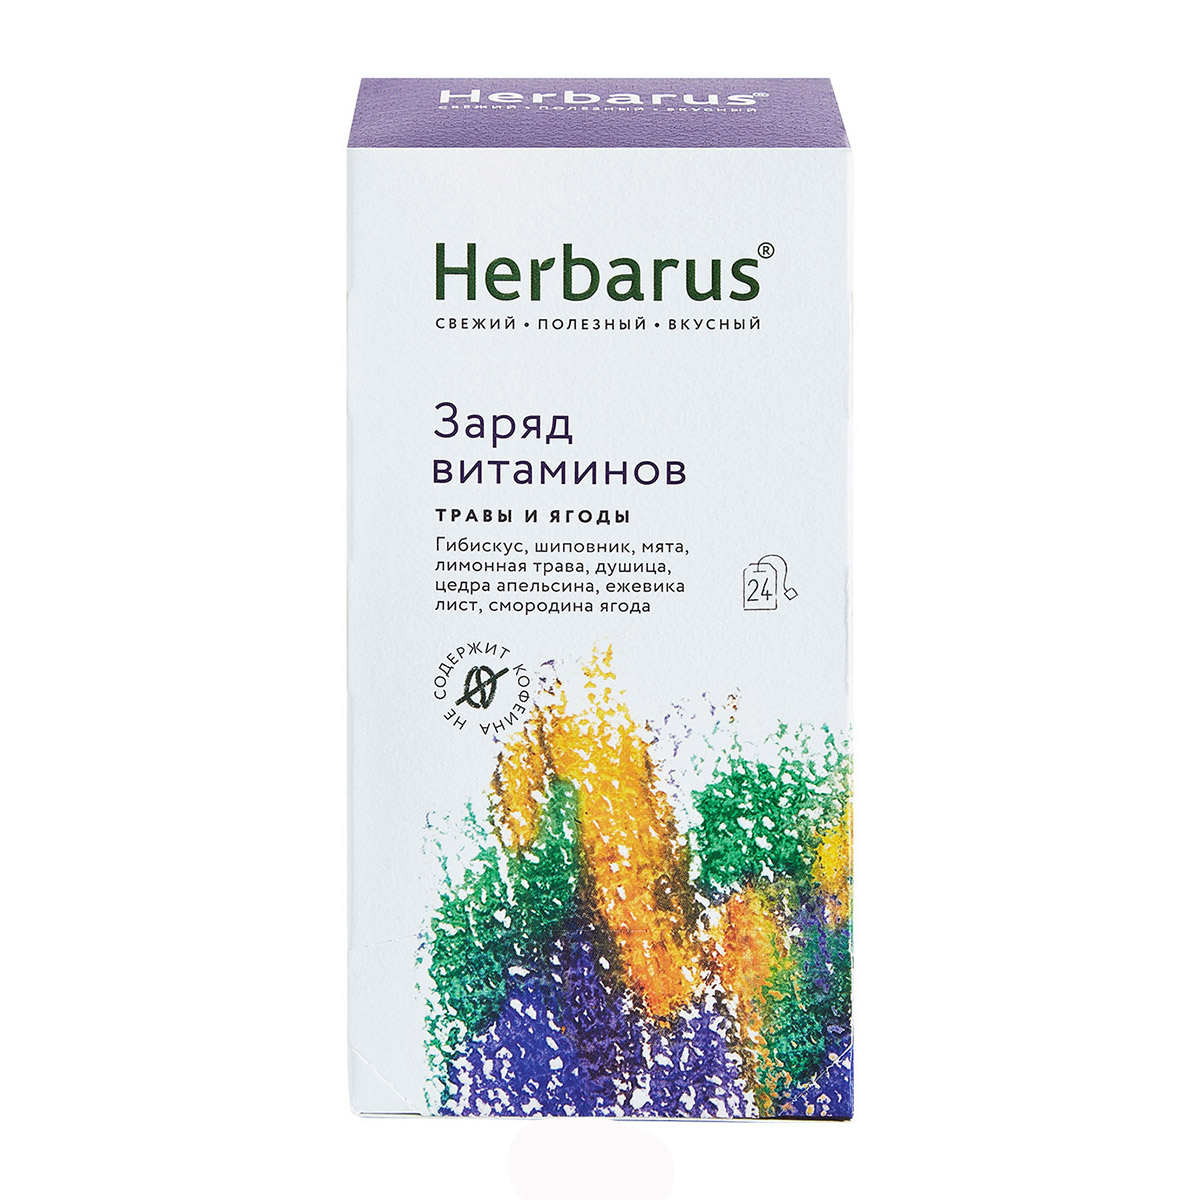 Herbarus Чайный напиток Заряд витаминов, 24 х 1,8 г (Herbarus, Травы и ягоды) чайный напиток herbarus заряд витаминов 50 г